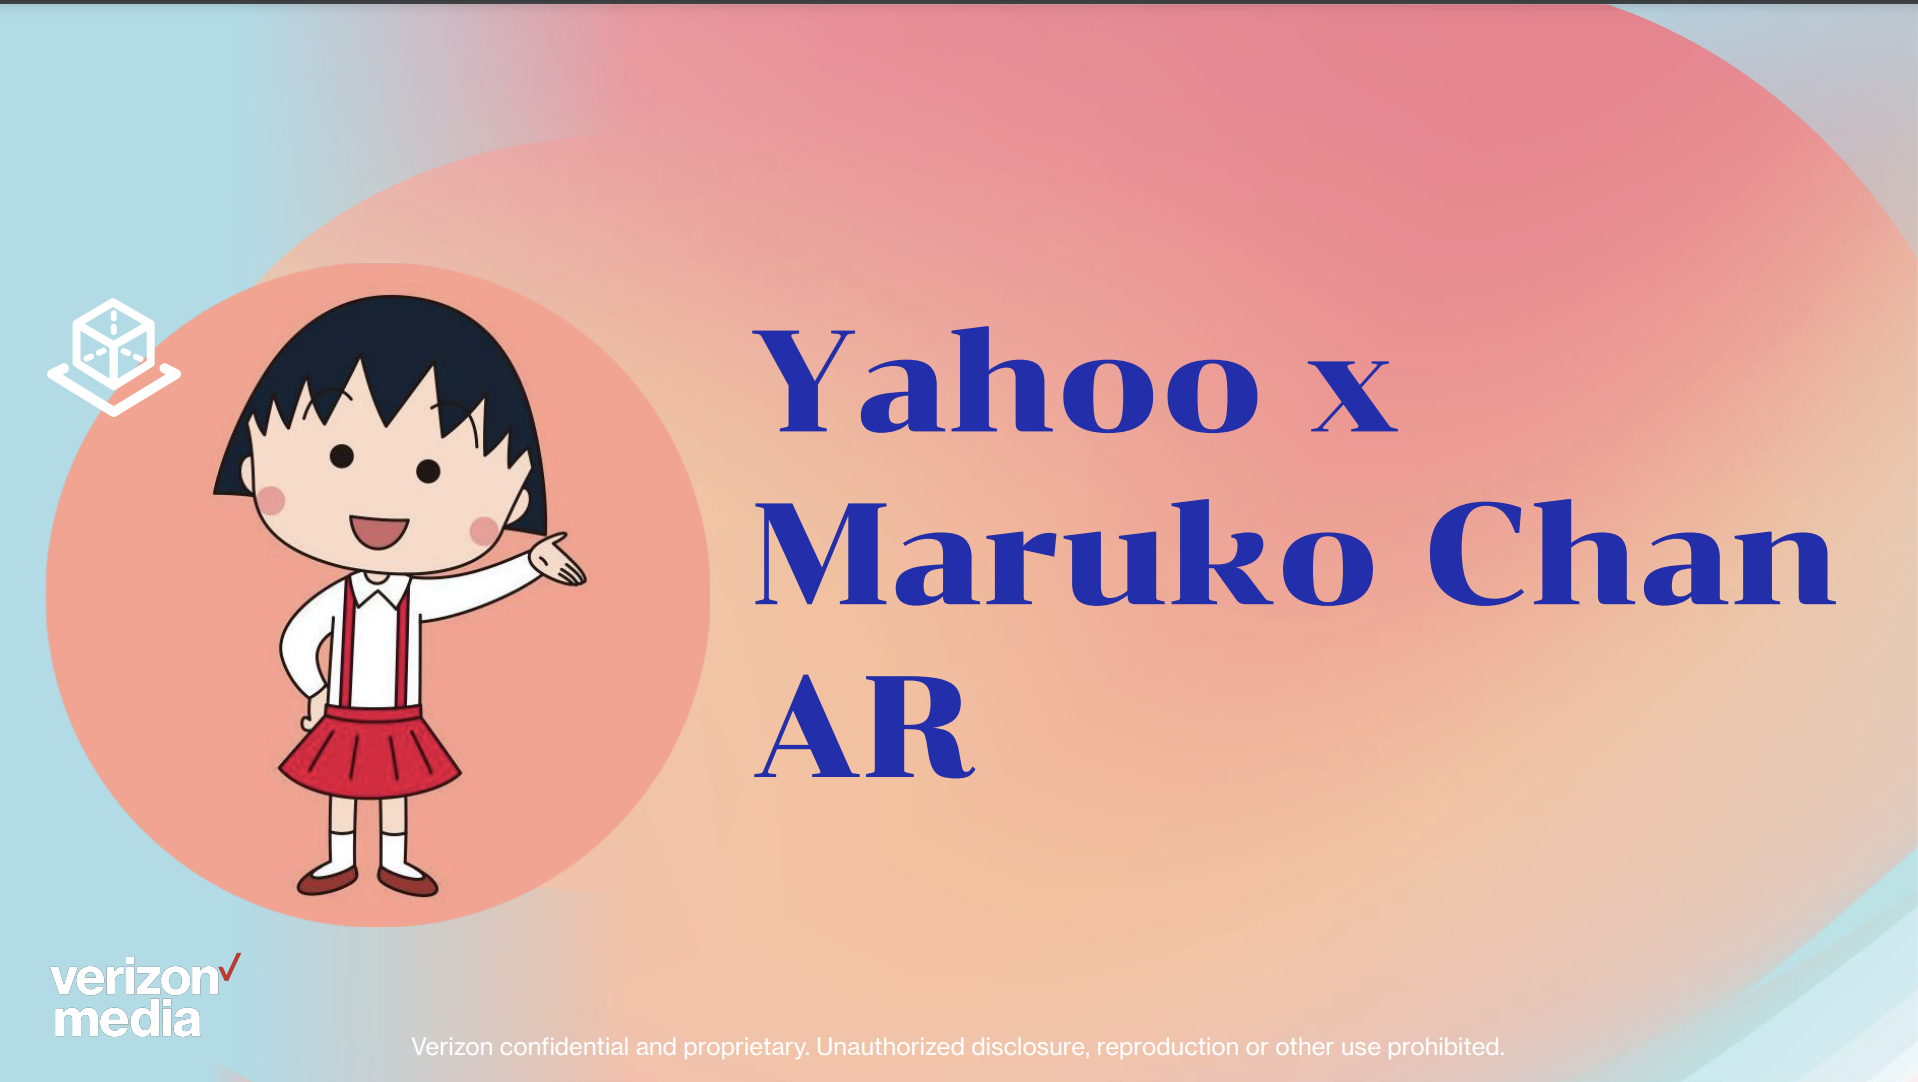 Yahoo x Maruko Chan AR